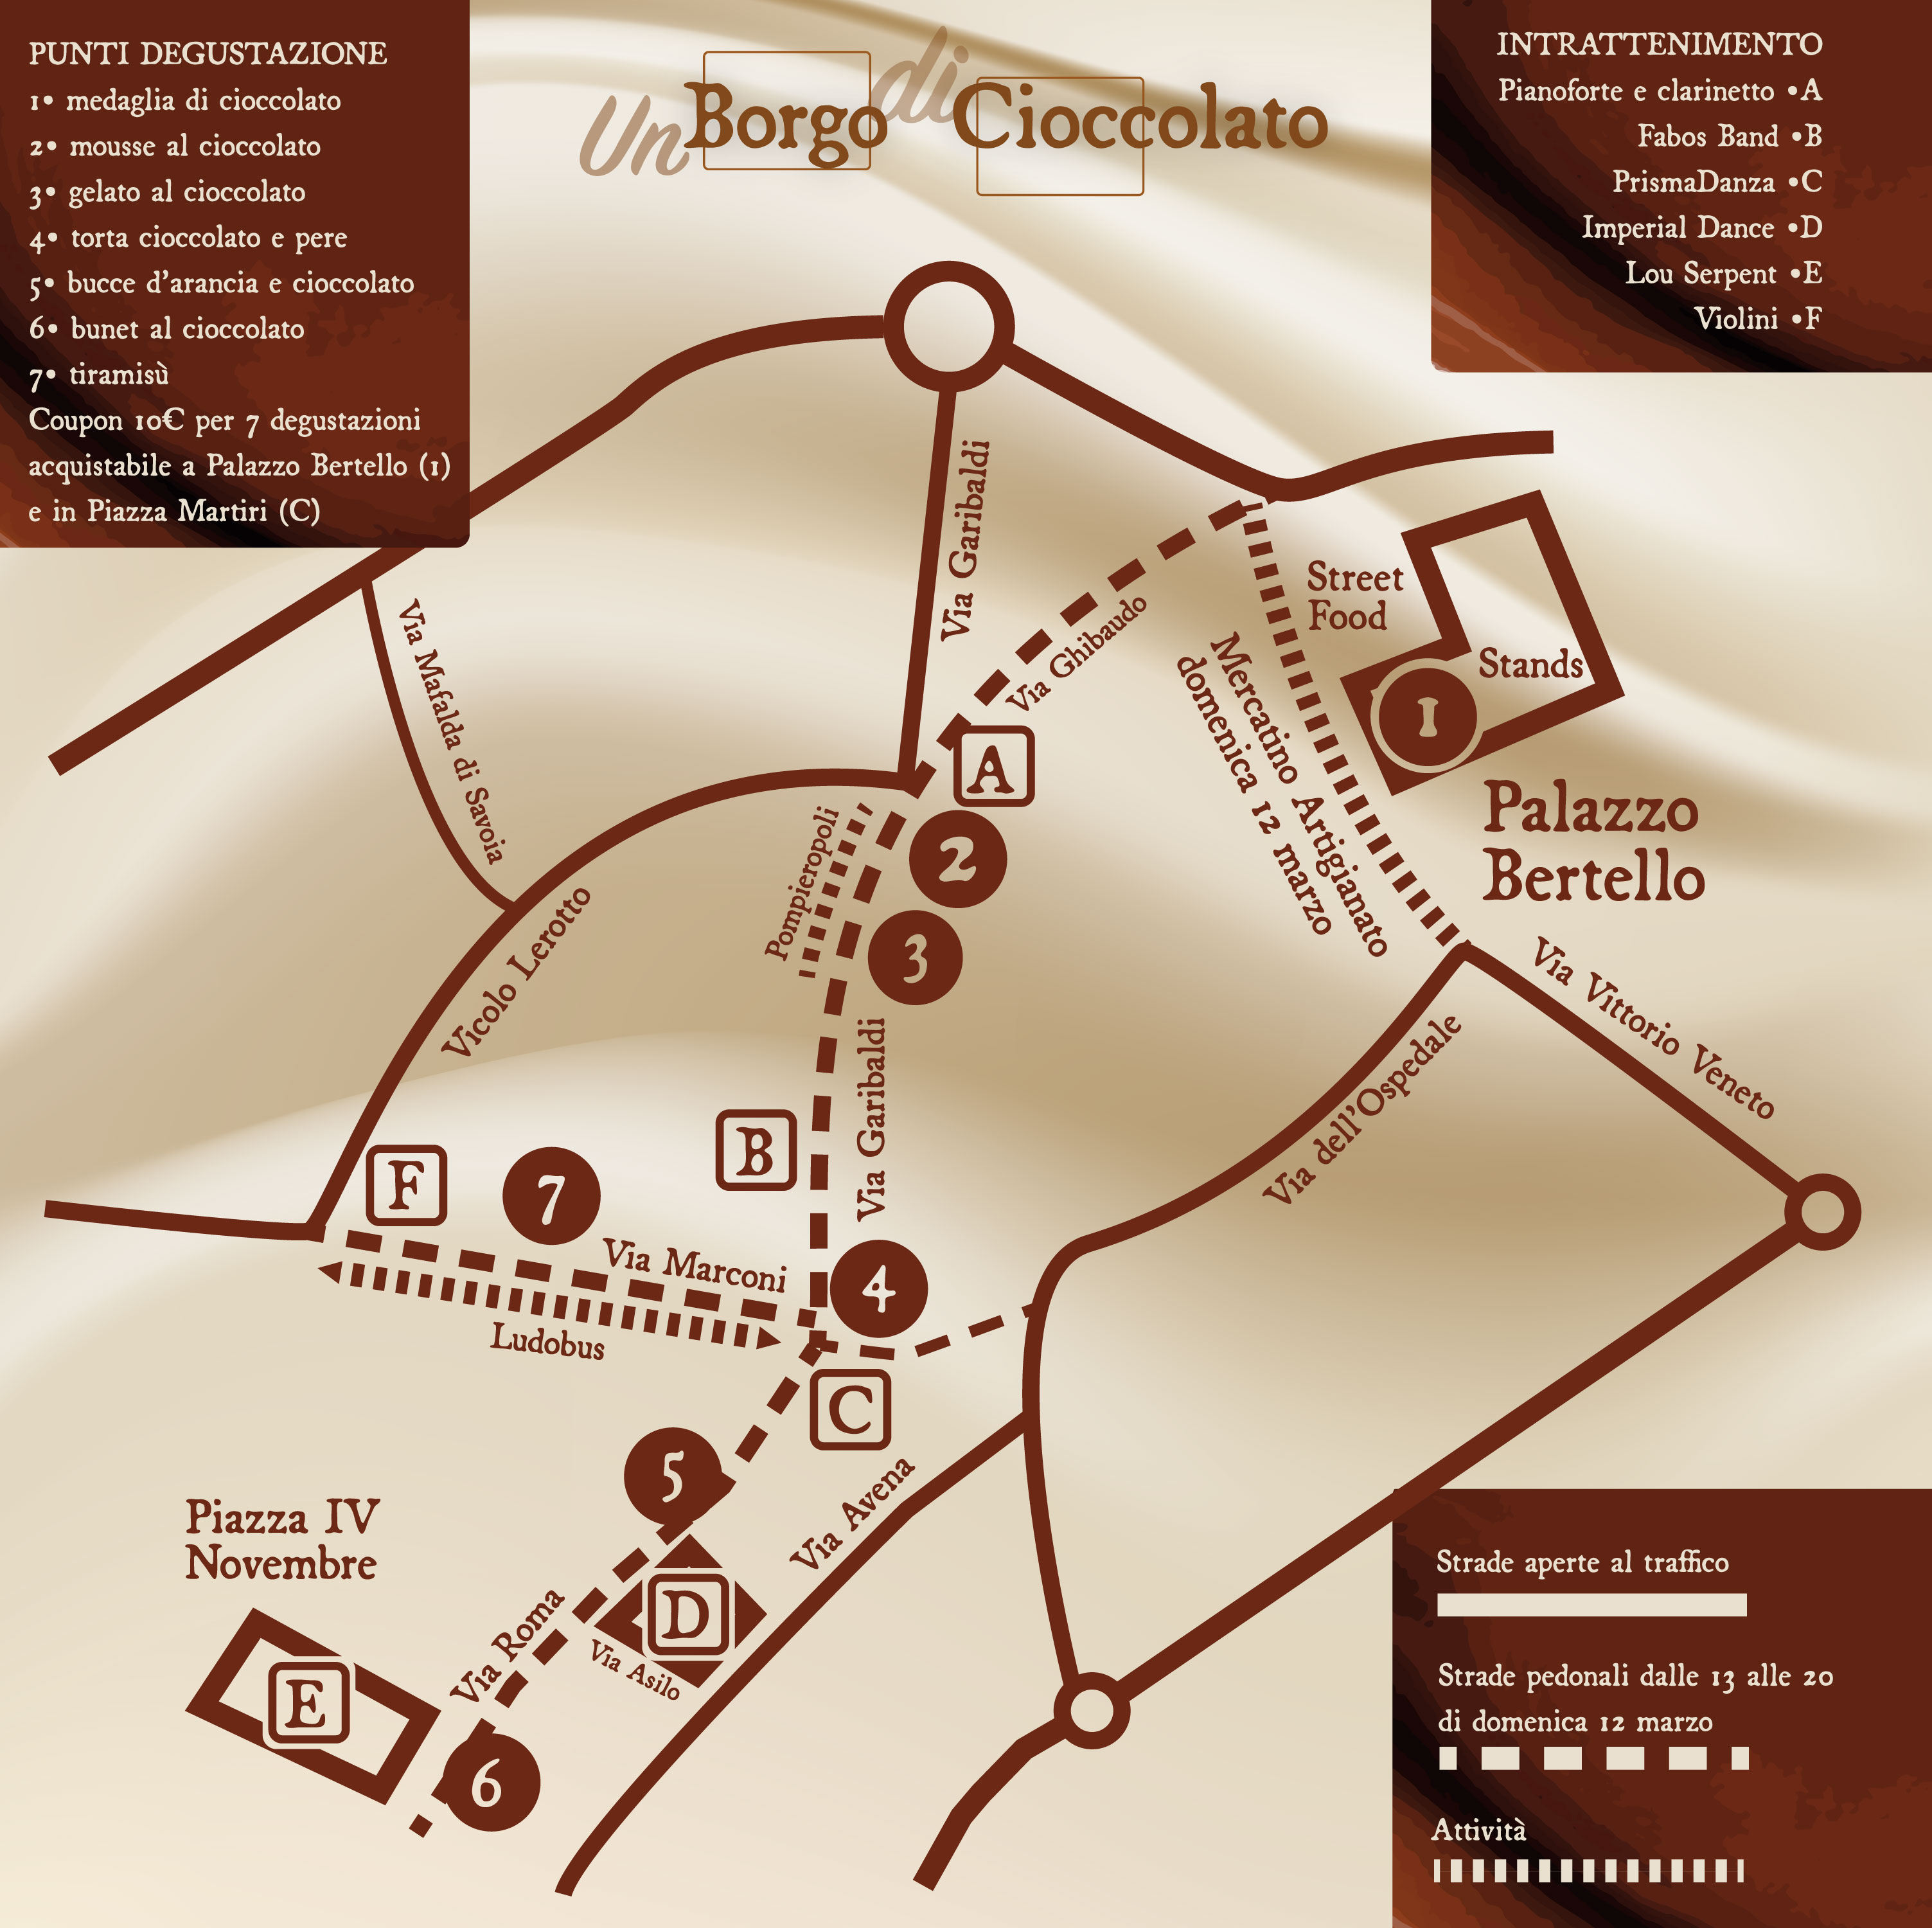 Immagine che rappresenta la mappa di un Borgo di Cioccolato, vale a dire una cartina stilizzata di Borgo San Dalmazzo con i punti di interesse della manifestazione